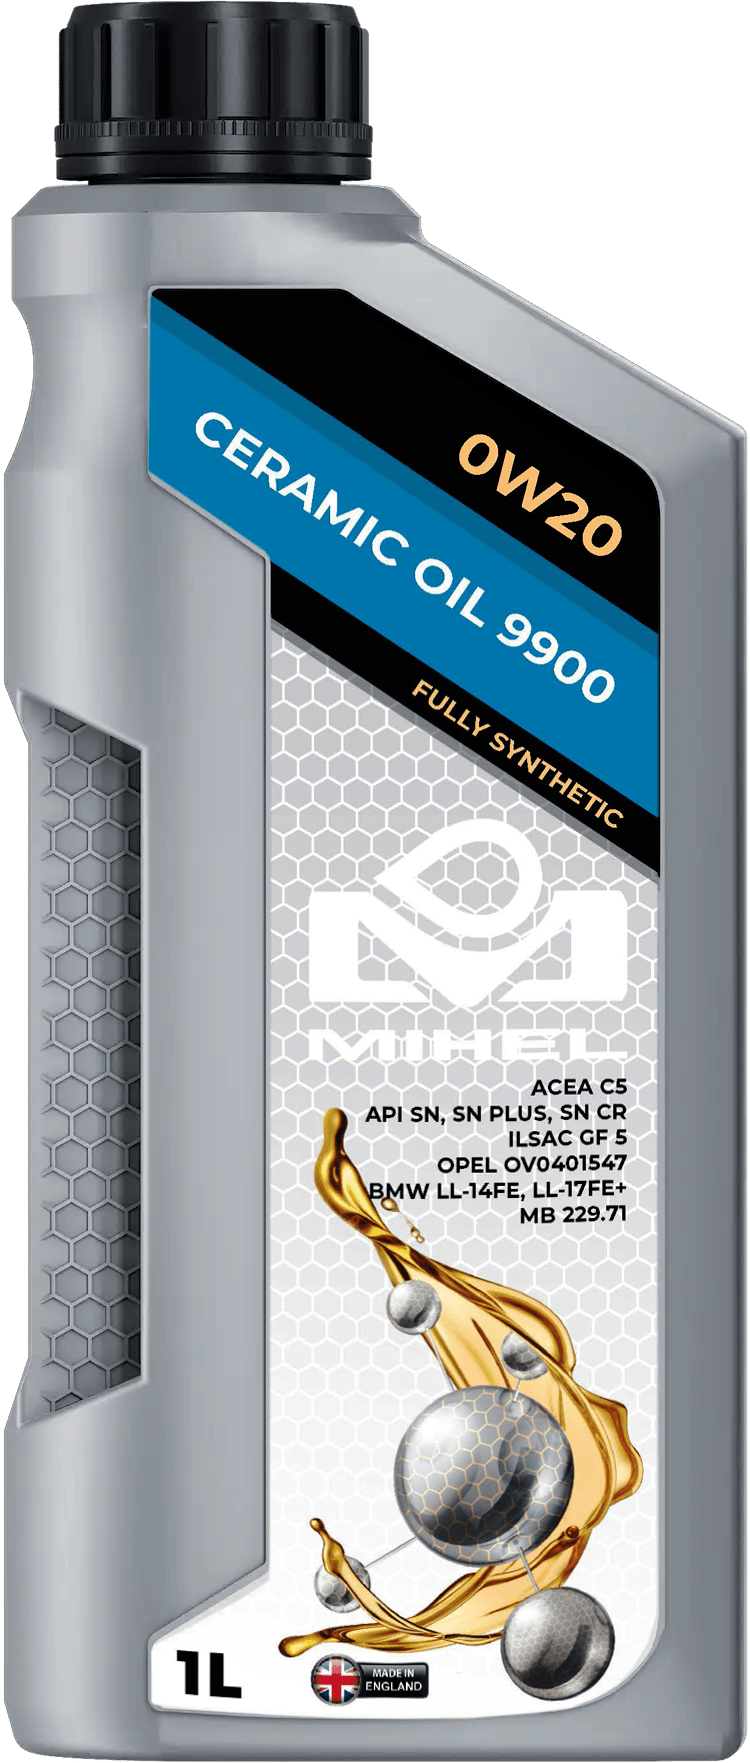 MIHEL Ceramic Oil® 9900 0W20